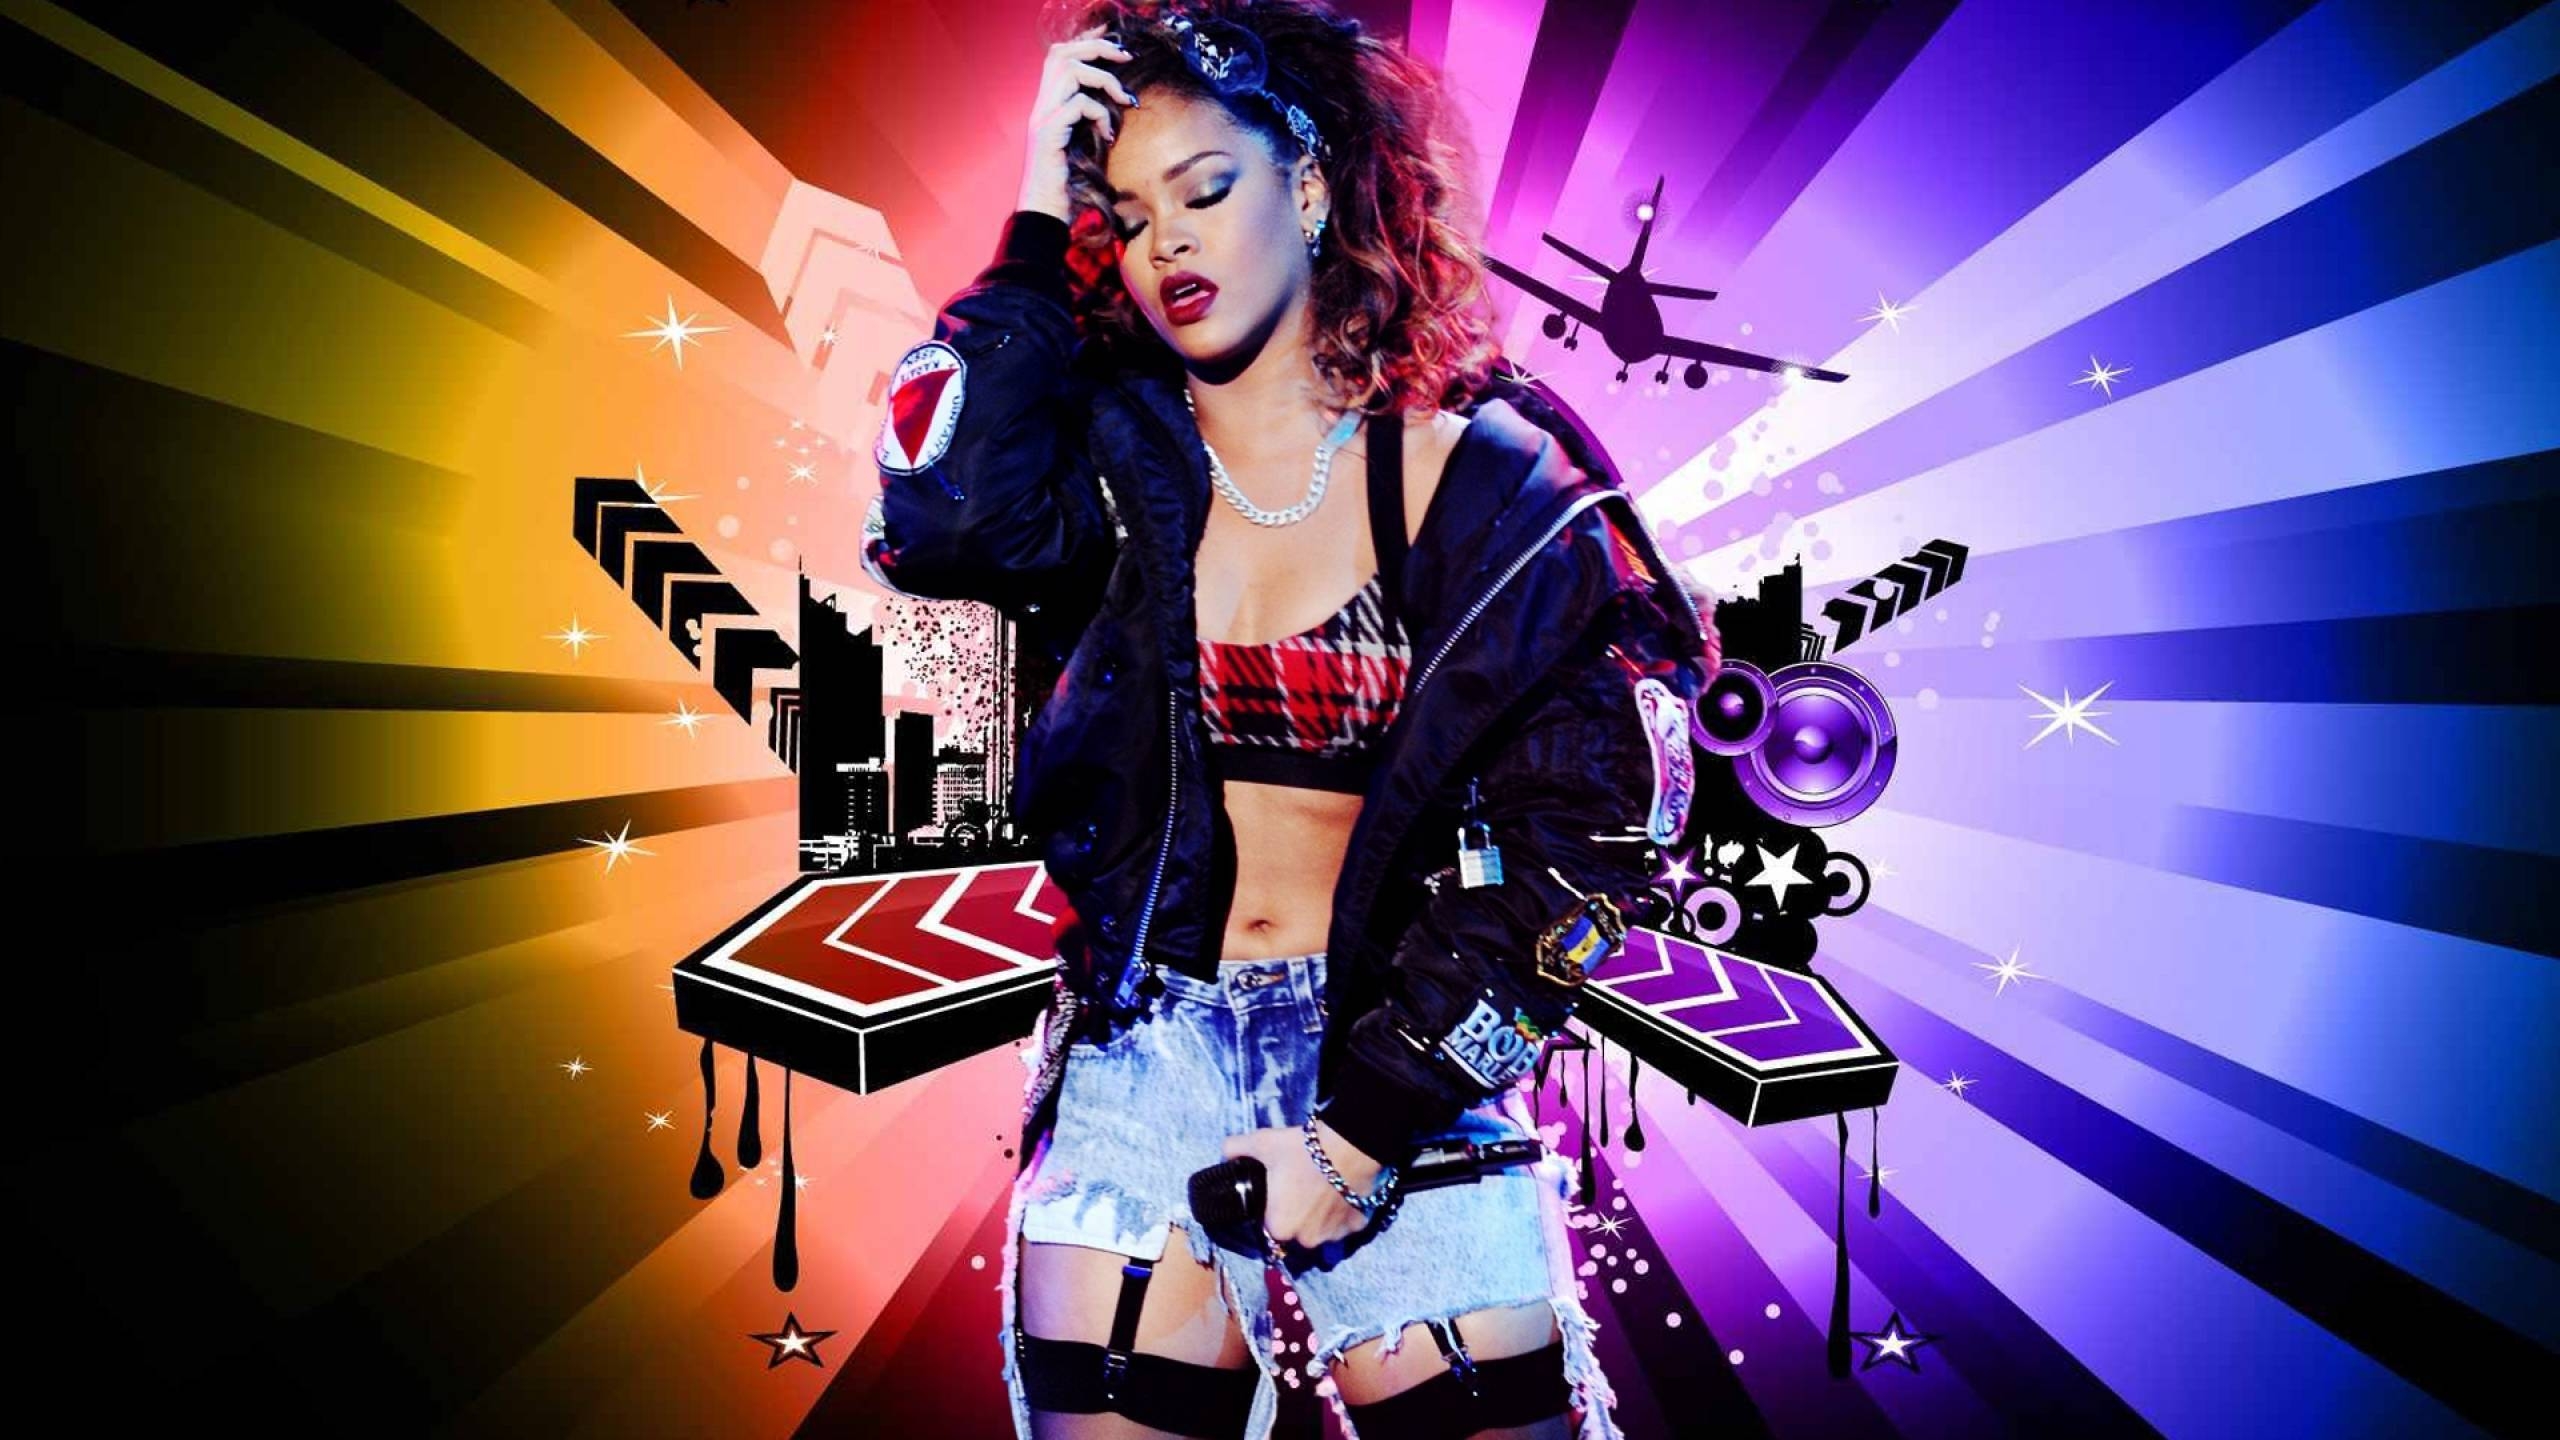 Rihanna Artwork for 2560x1440 HDTV resolution